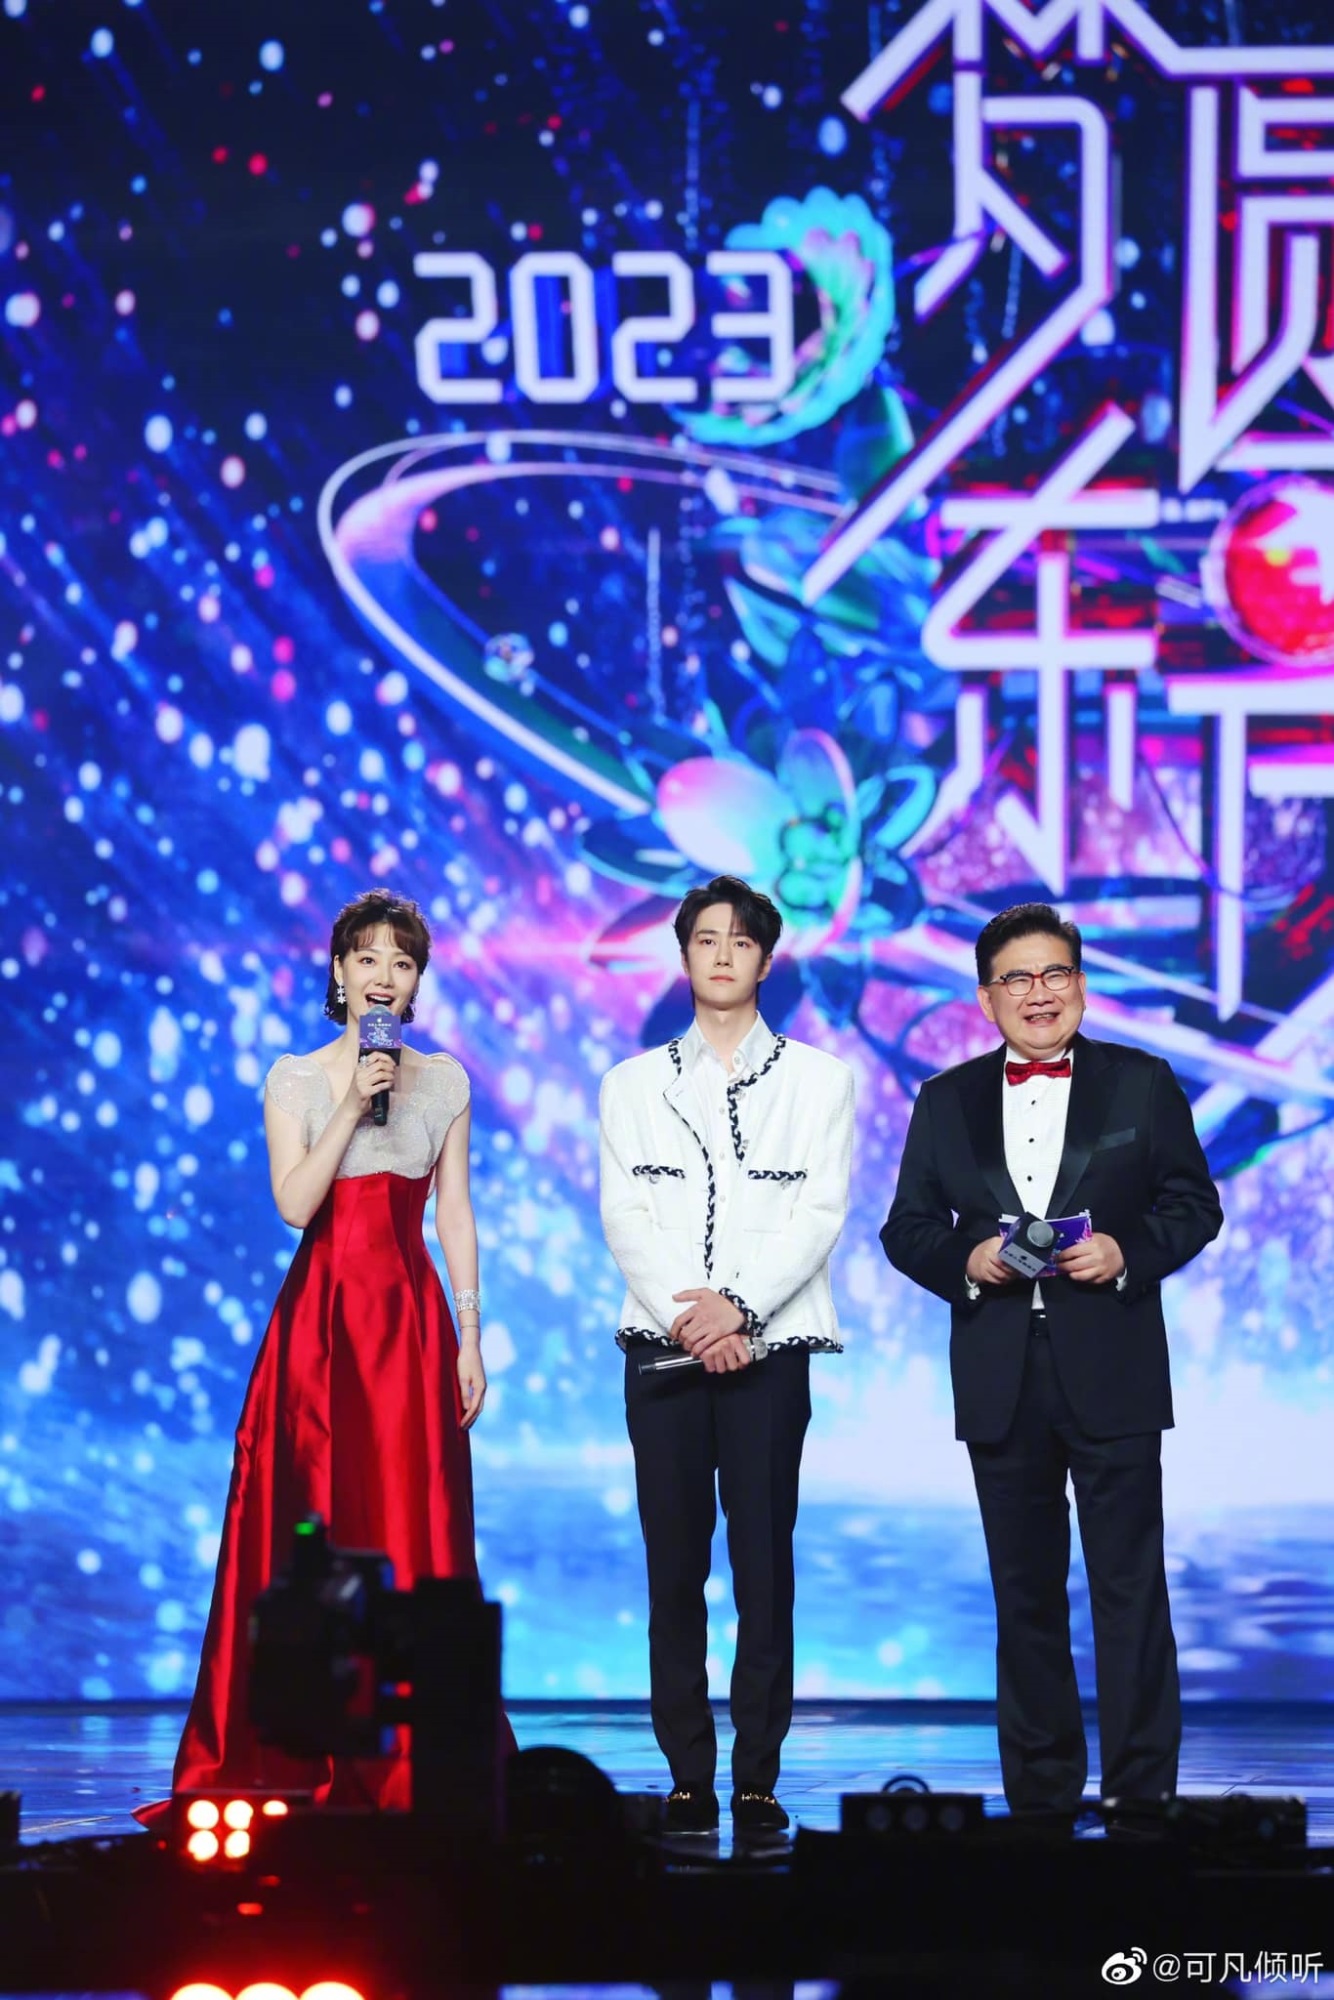 Trương Nghệ Hưng và Vương Nhất Bác 'chiến nhau' chỉ vì màn biểu diễn trong đêm nhạc, mở hàng drama Hoa Ngữ đầu năm mới - Ảnh 3